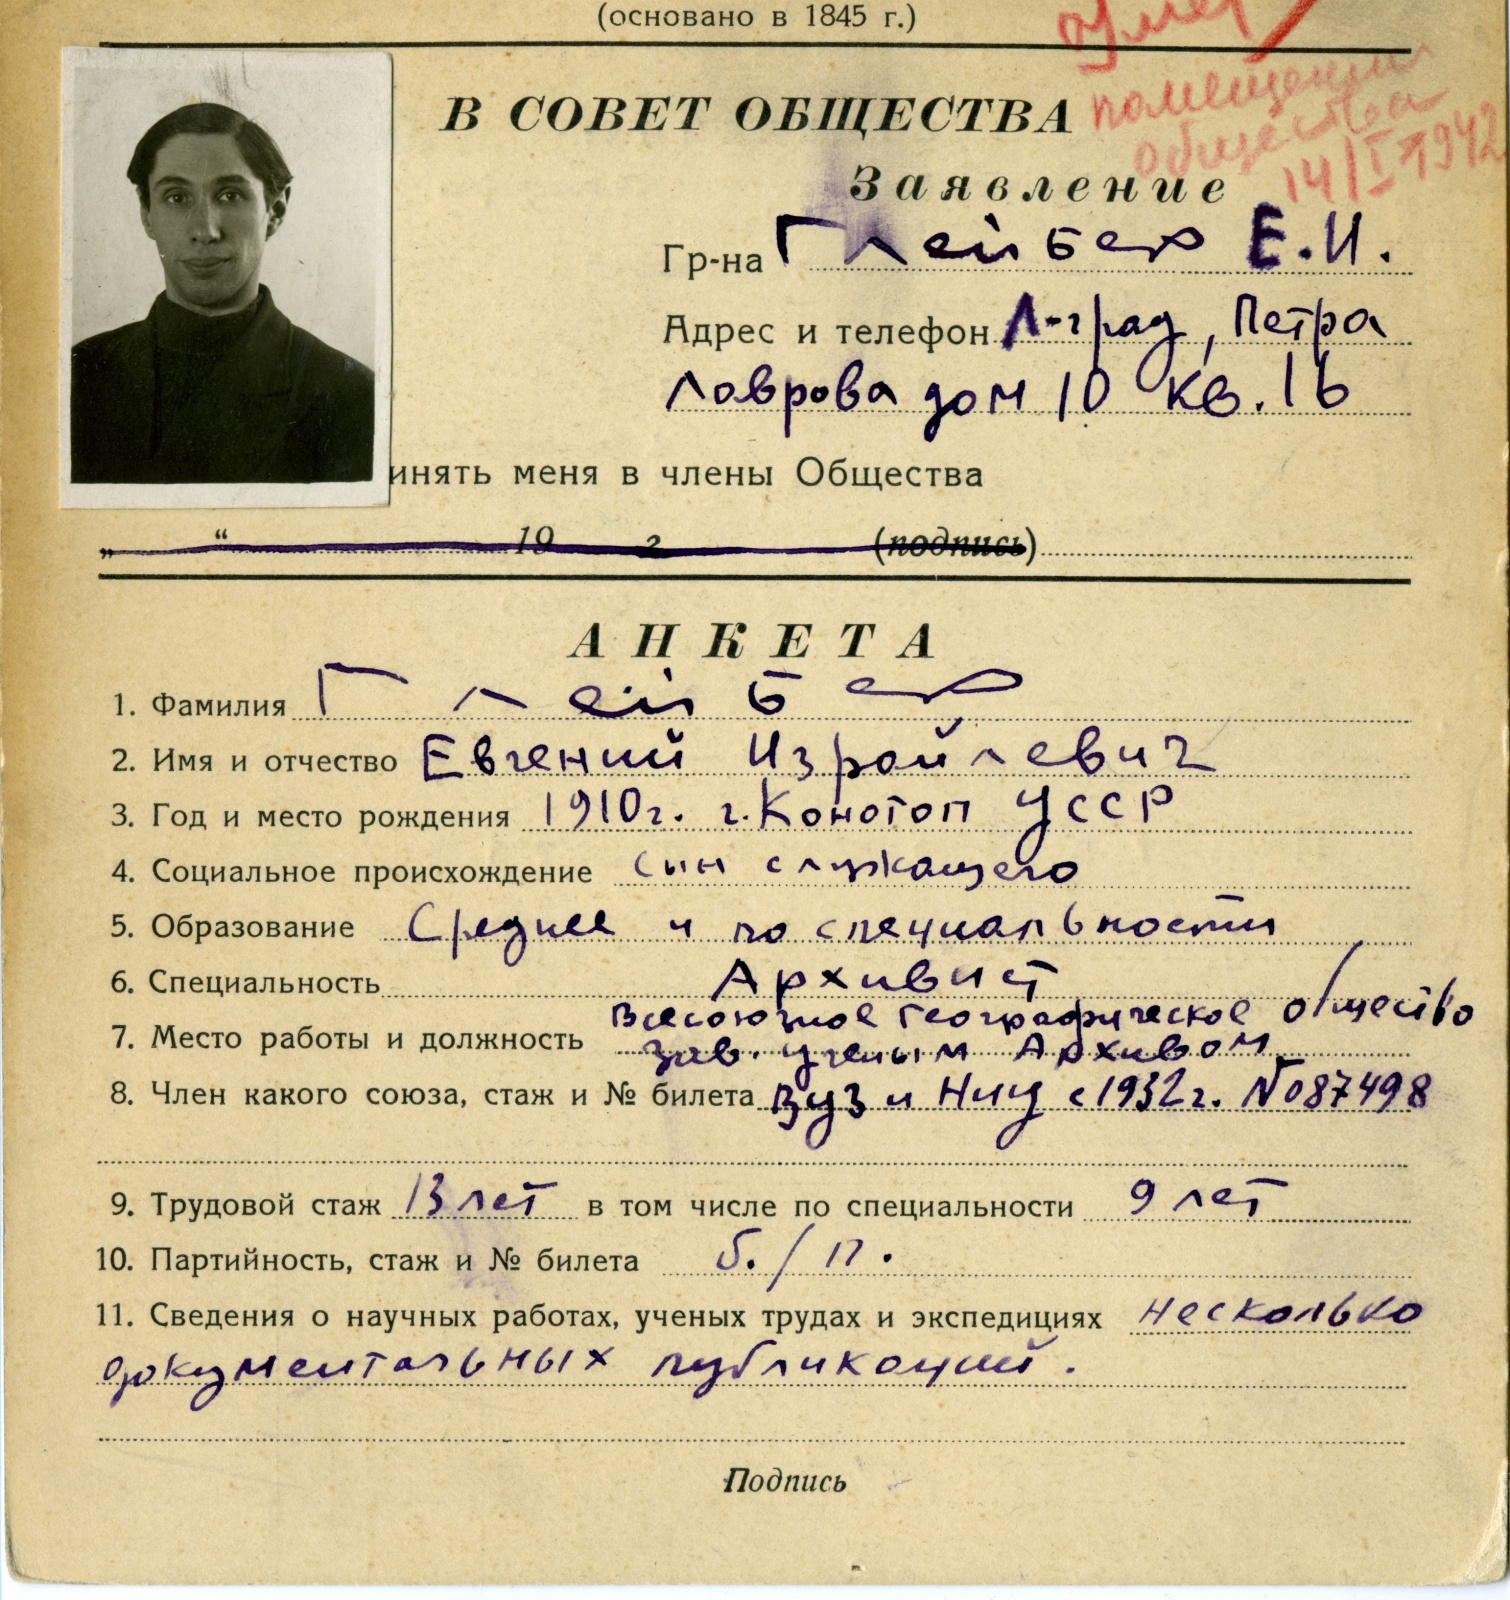 Учётная карточка Е.И. Глейбера. Фото: Научный архив РГО